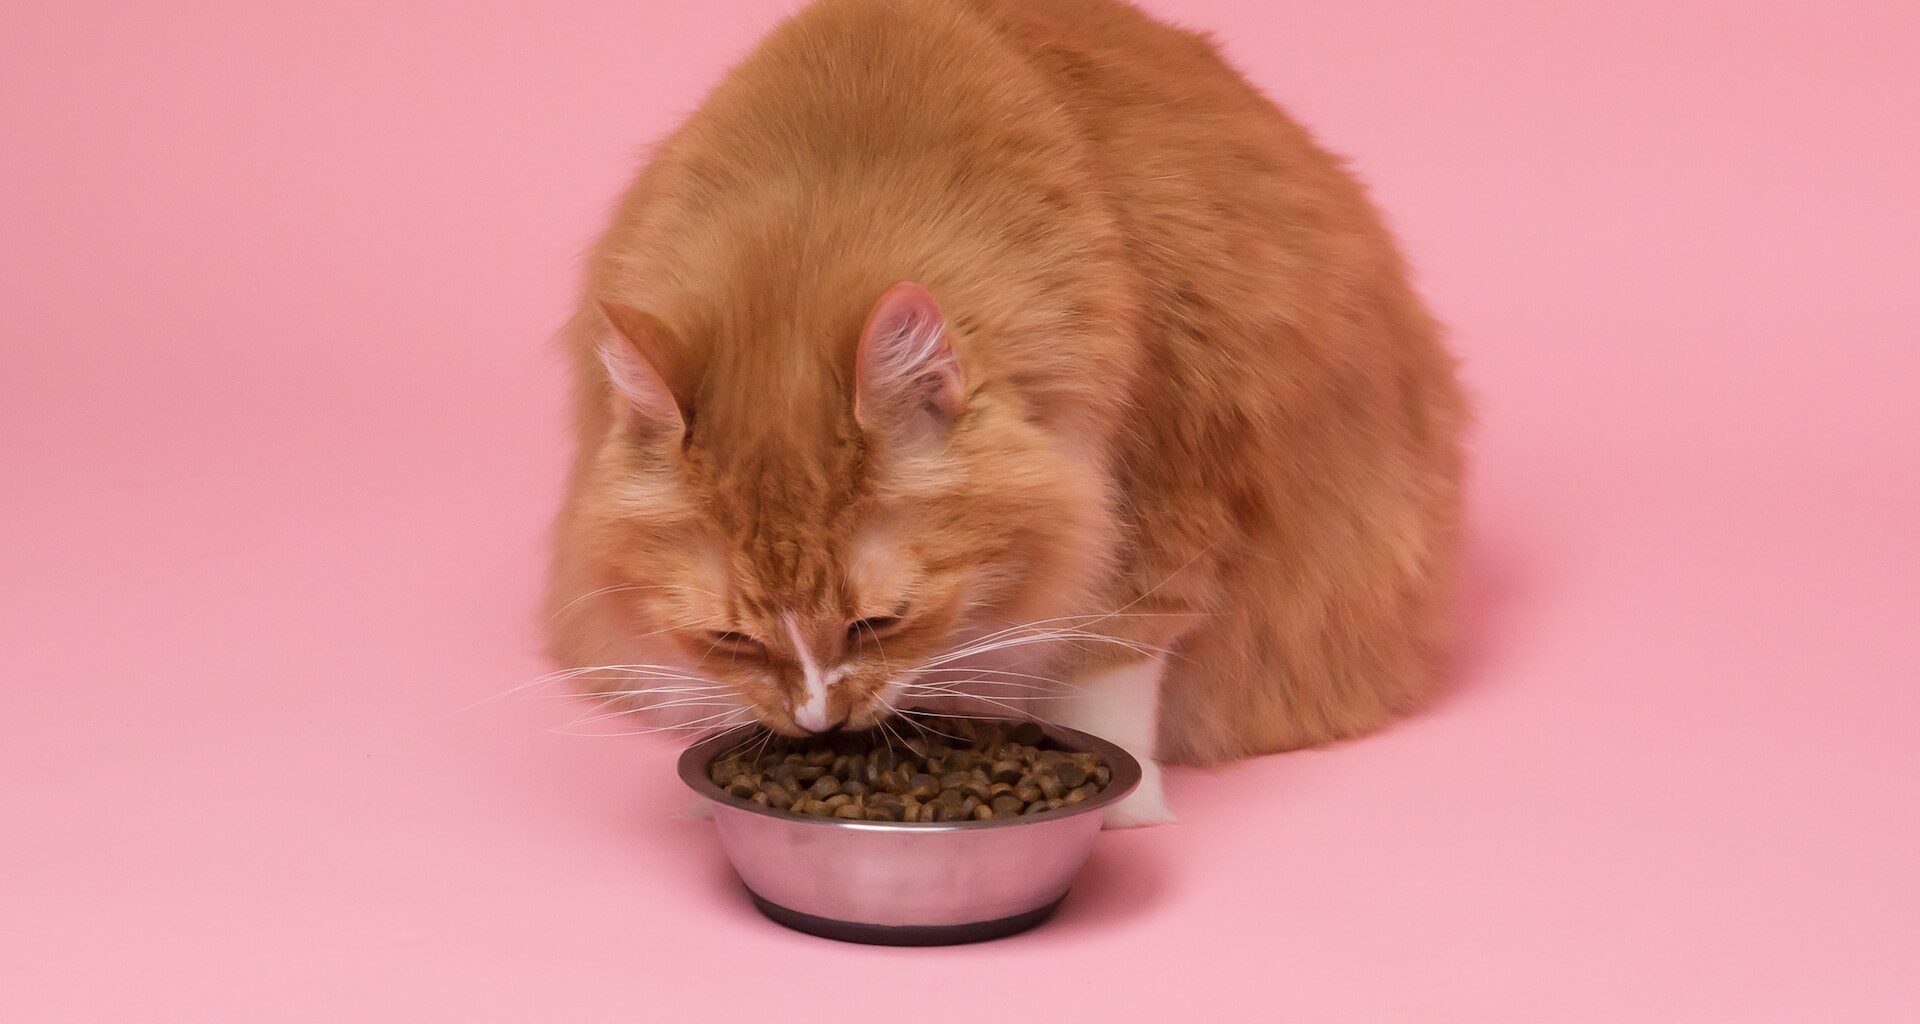 rudy kot jedzący karmę z miski na różowym tle